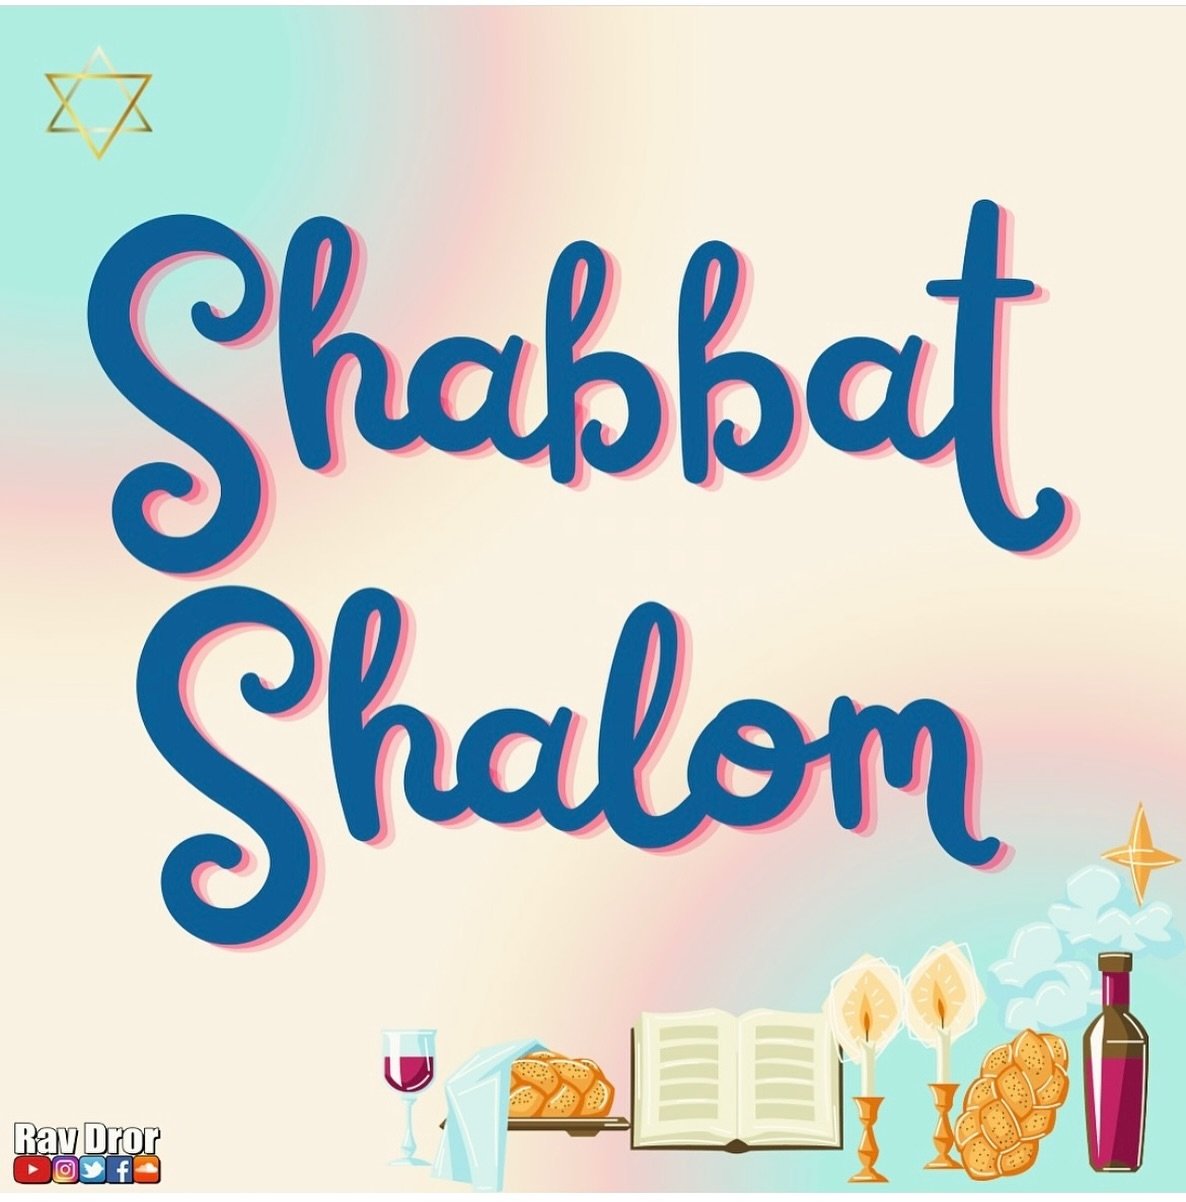 Shabbat shalom!🙏🏽

#ravdror #emunah #shabbatshalom #amisraelchai #jewishlife